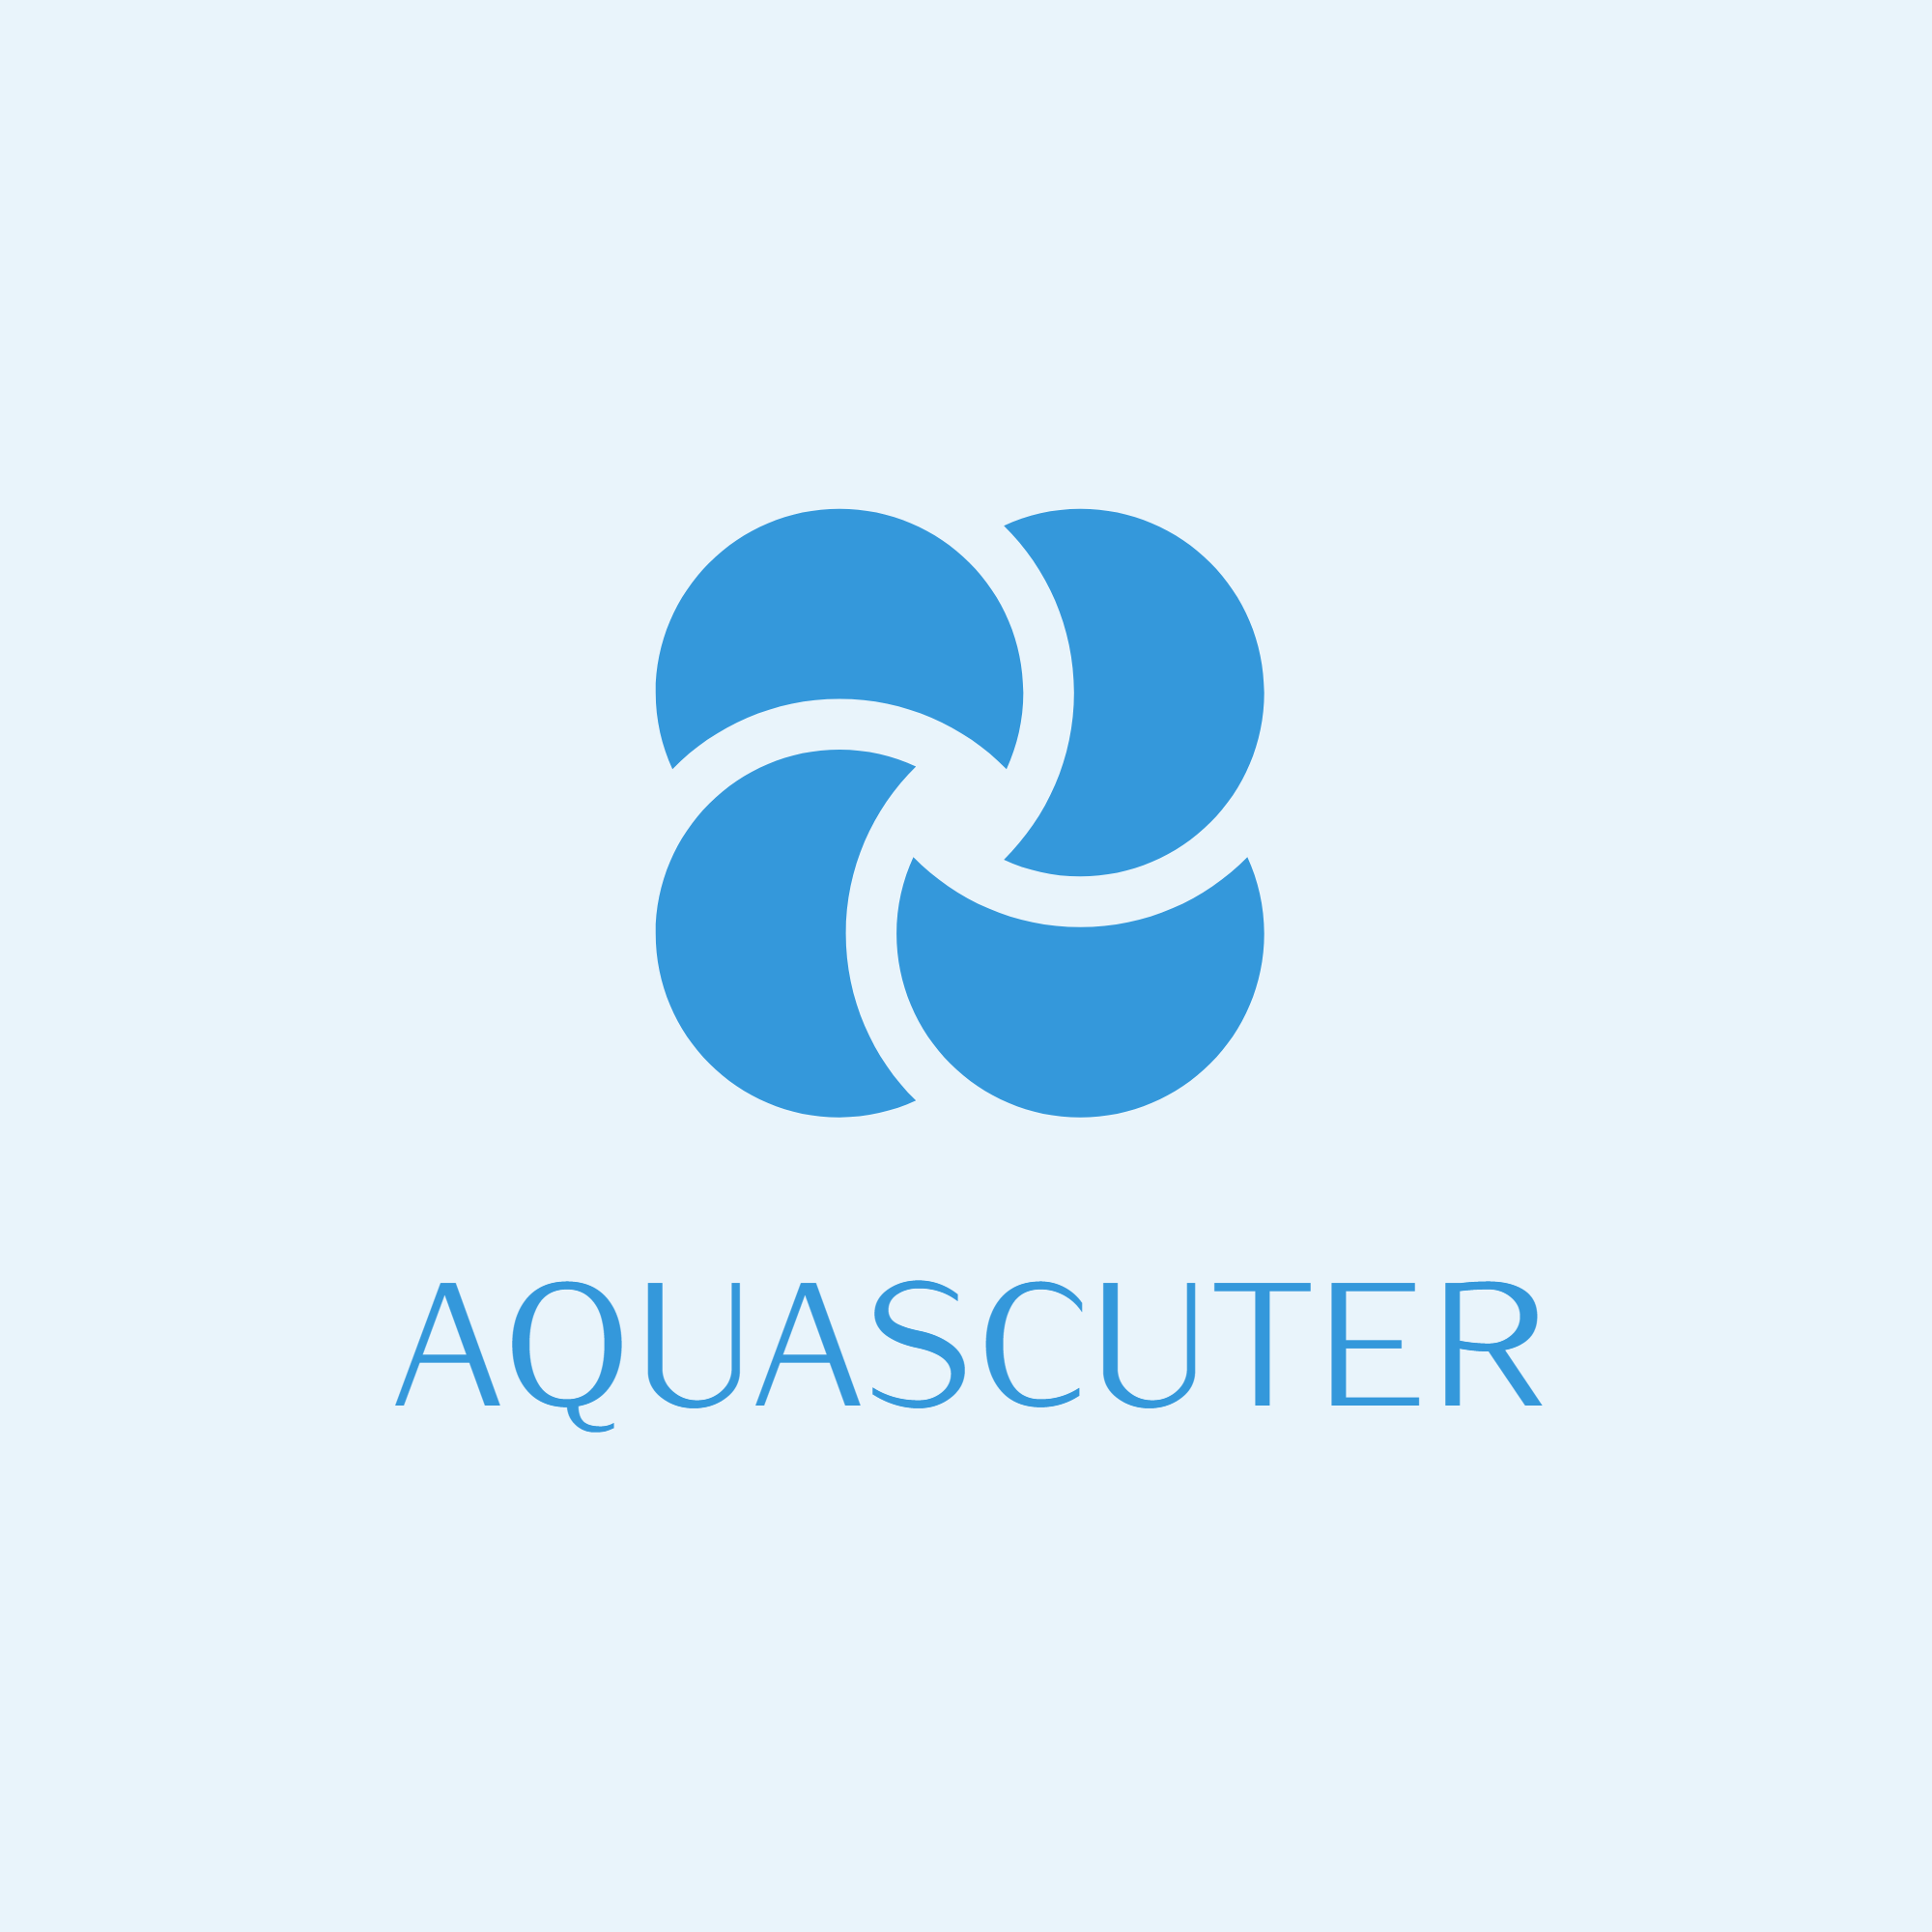 AquaScuter